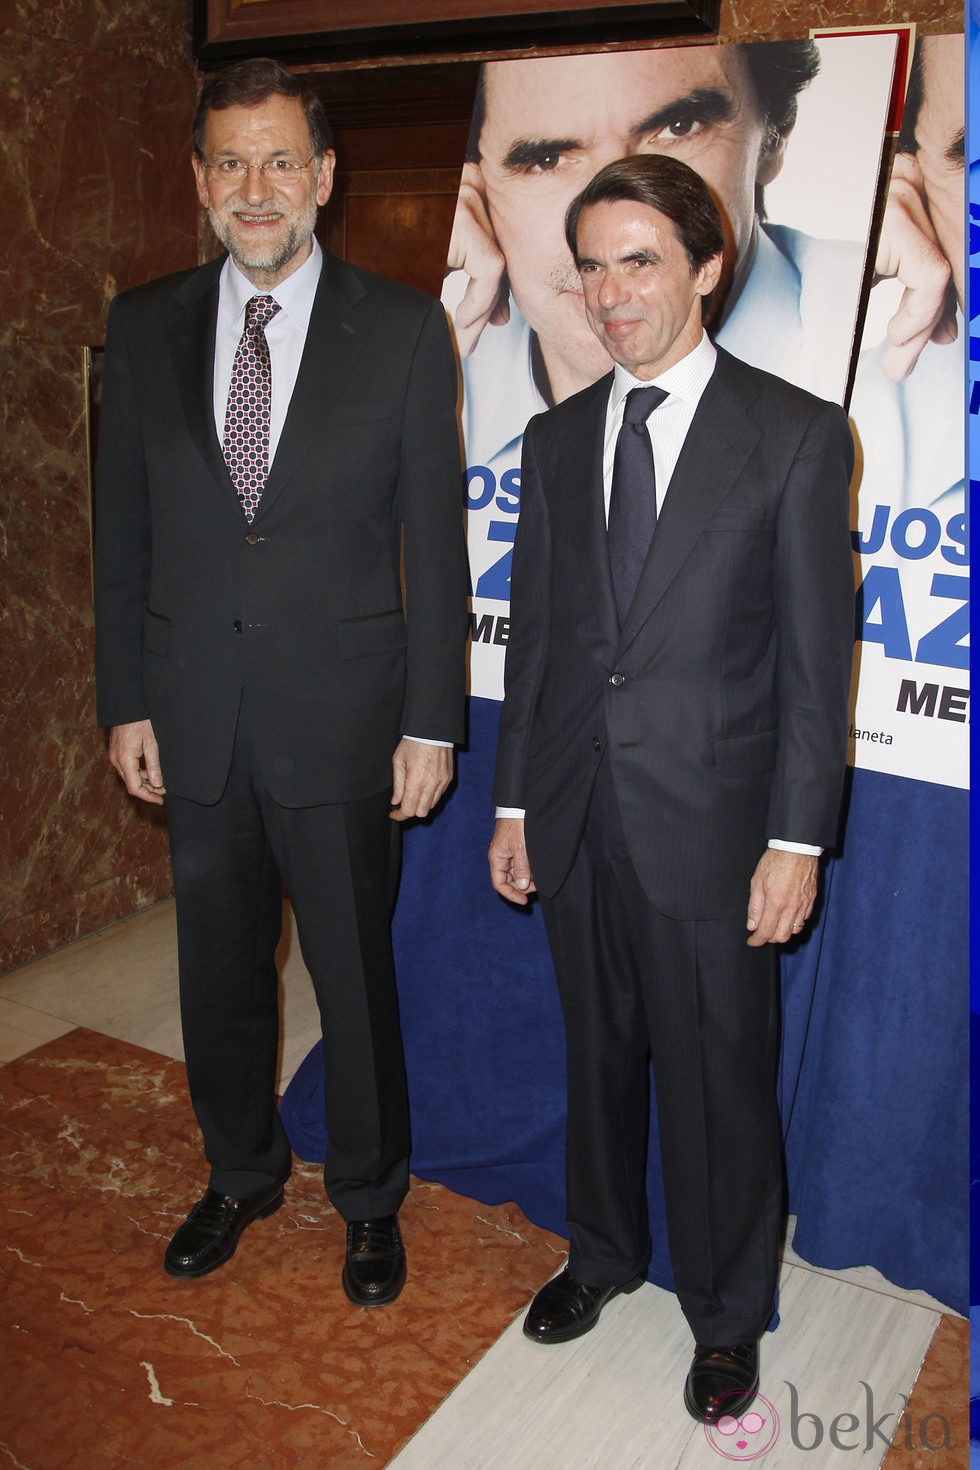 Mariano Rajoy y José María Aznar en la presentación de las memorias de José María Aznar